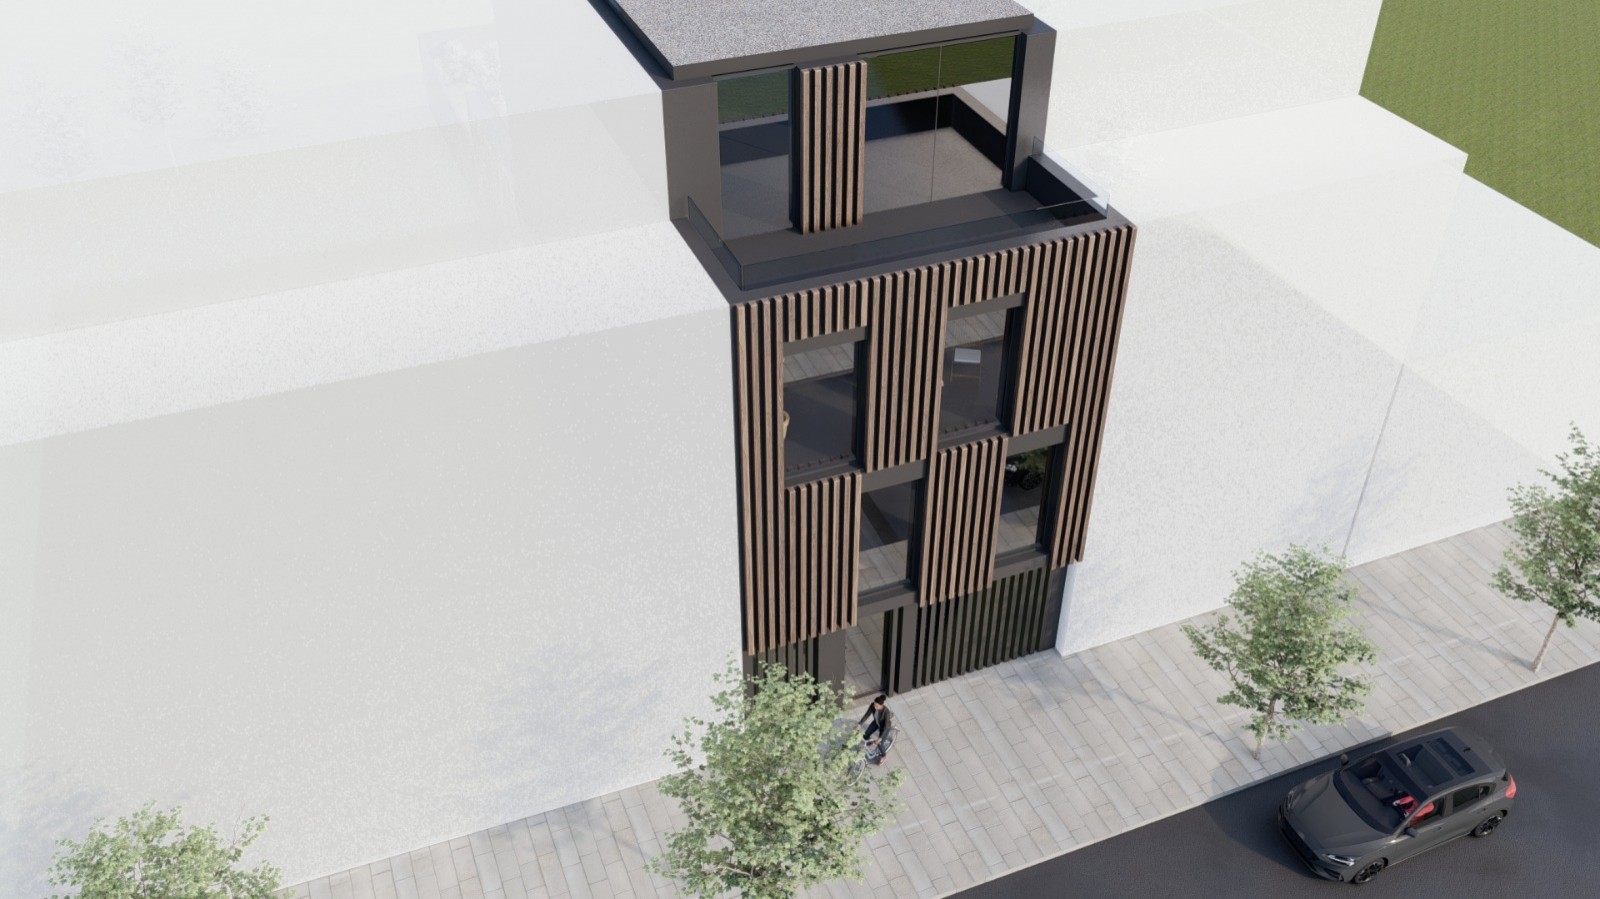 Venda: Prédio com projeto para 4 apartamentos T2, em Matosinhos_210231